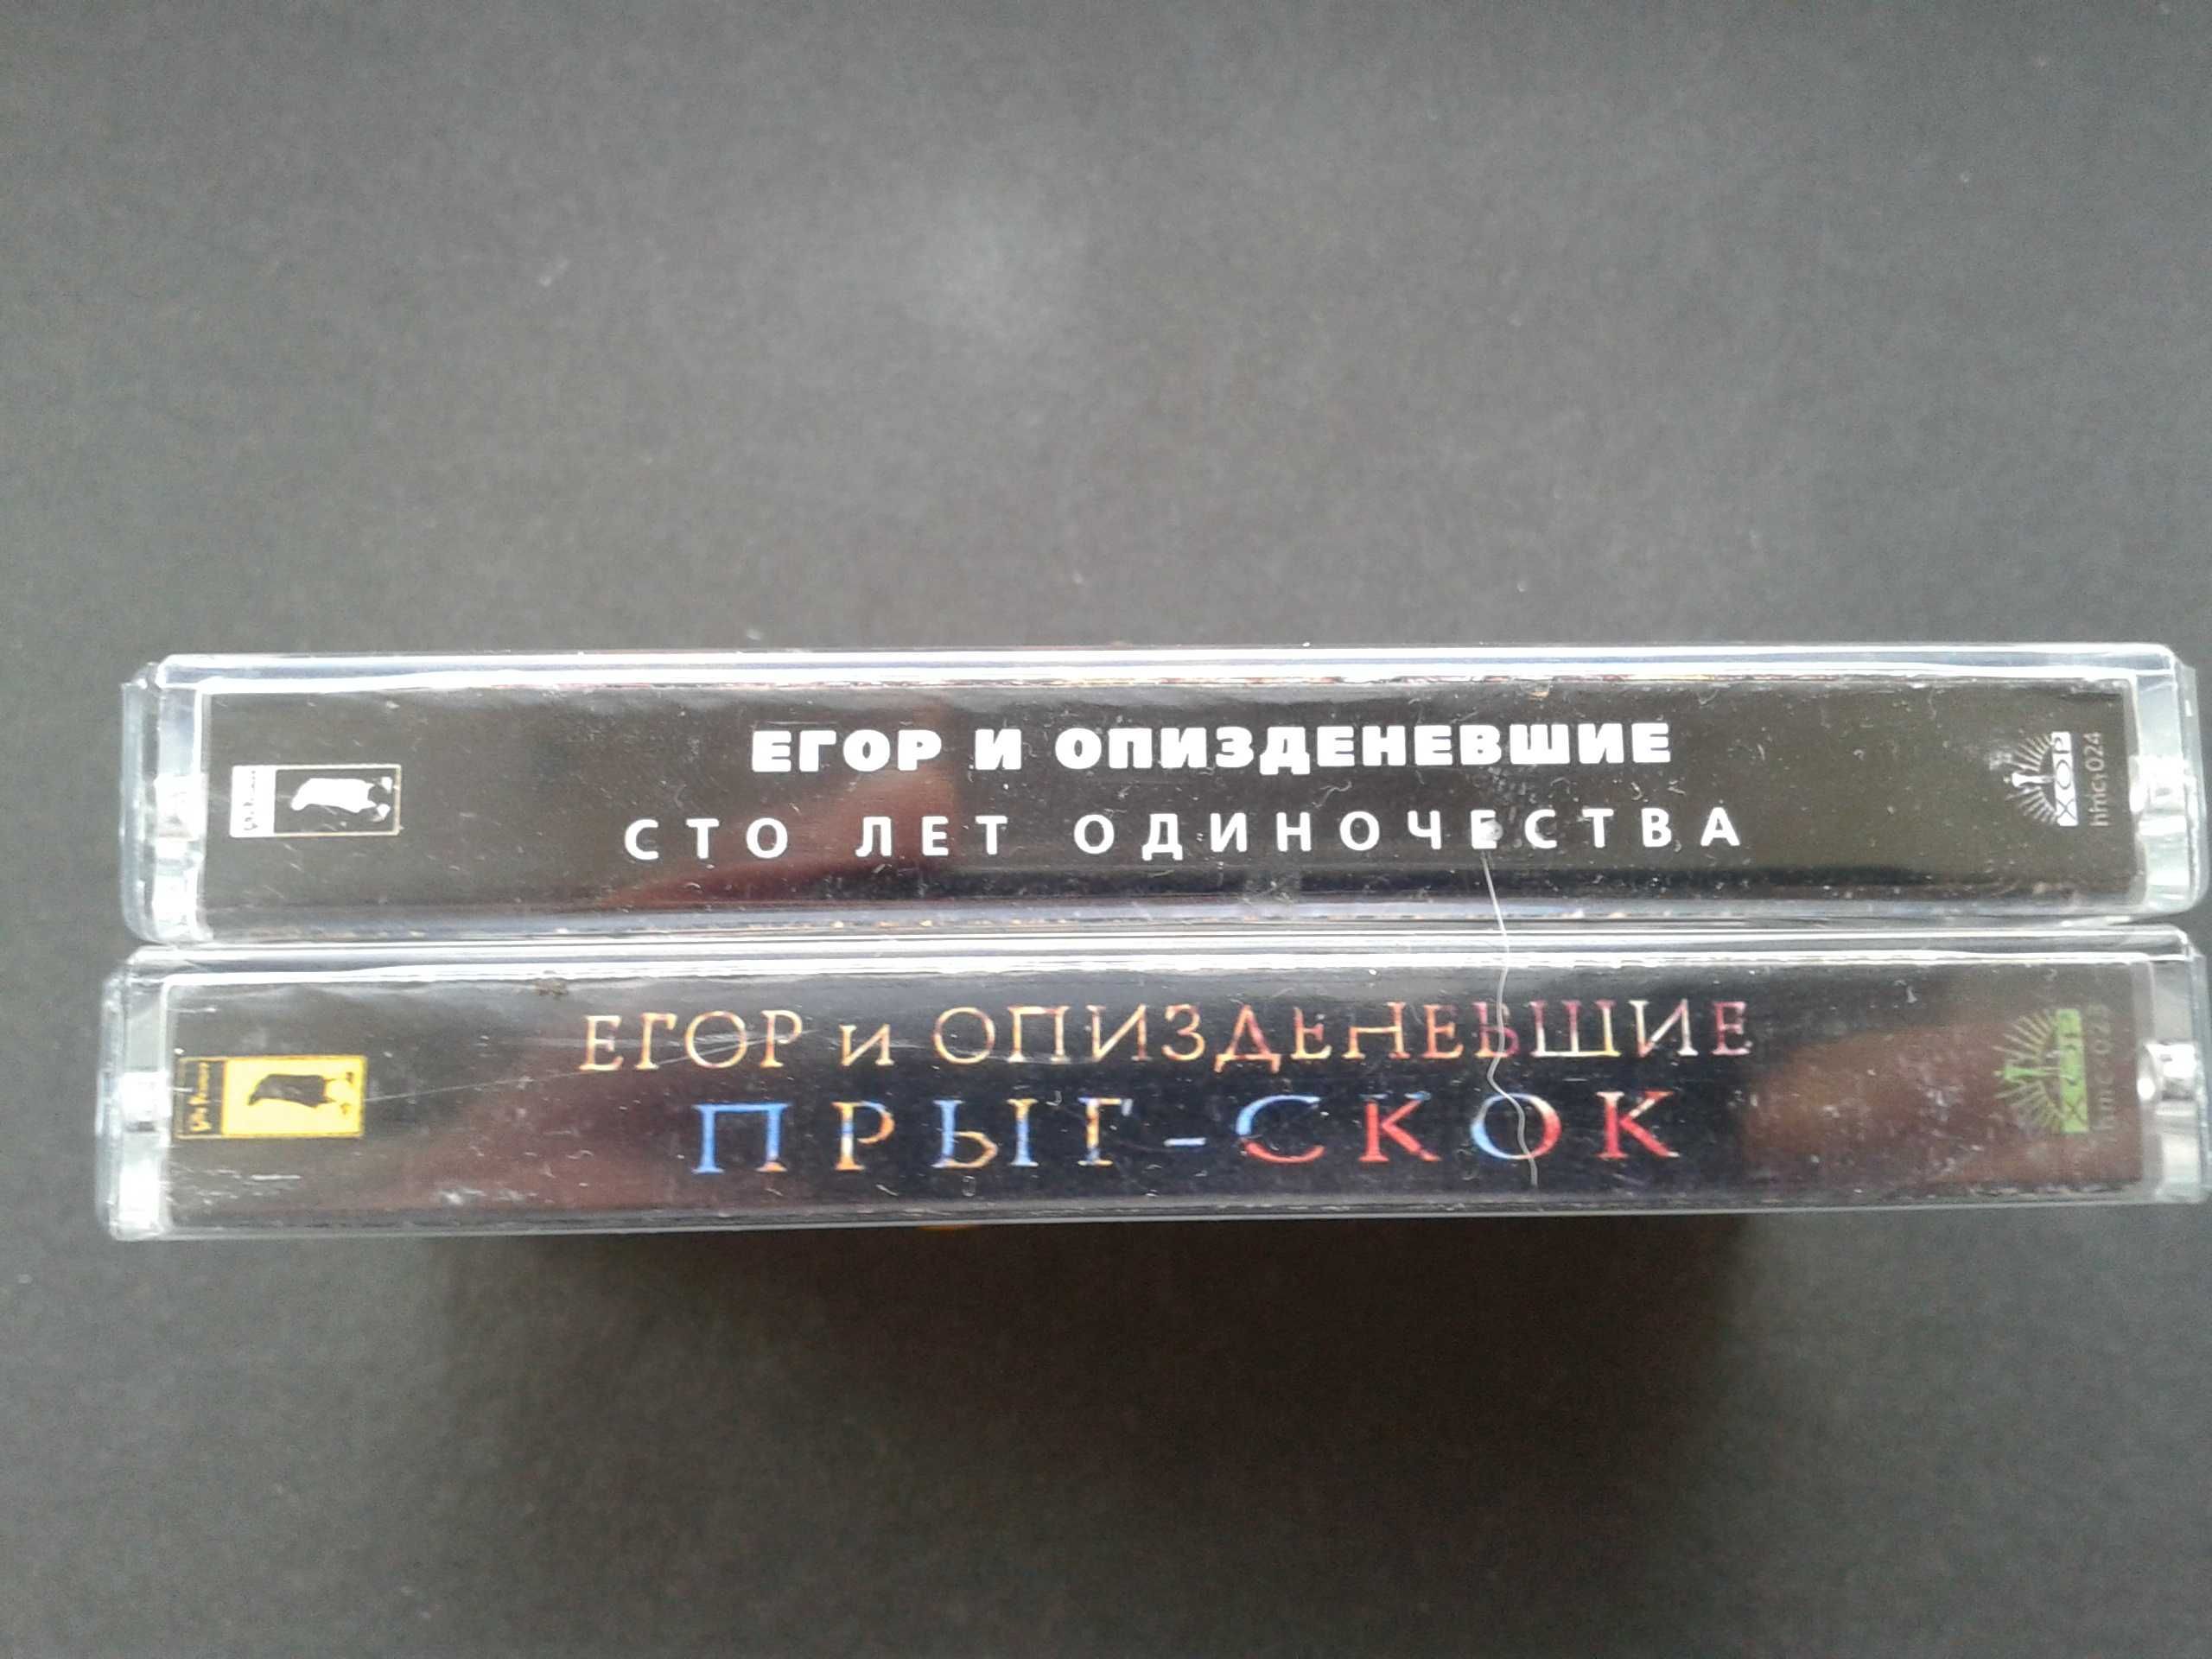 Егор Летов - Прыг-Скок, Сто лет одиночества (2 кассеты)